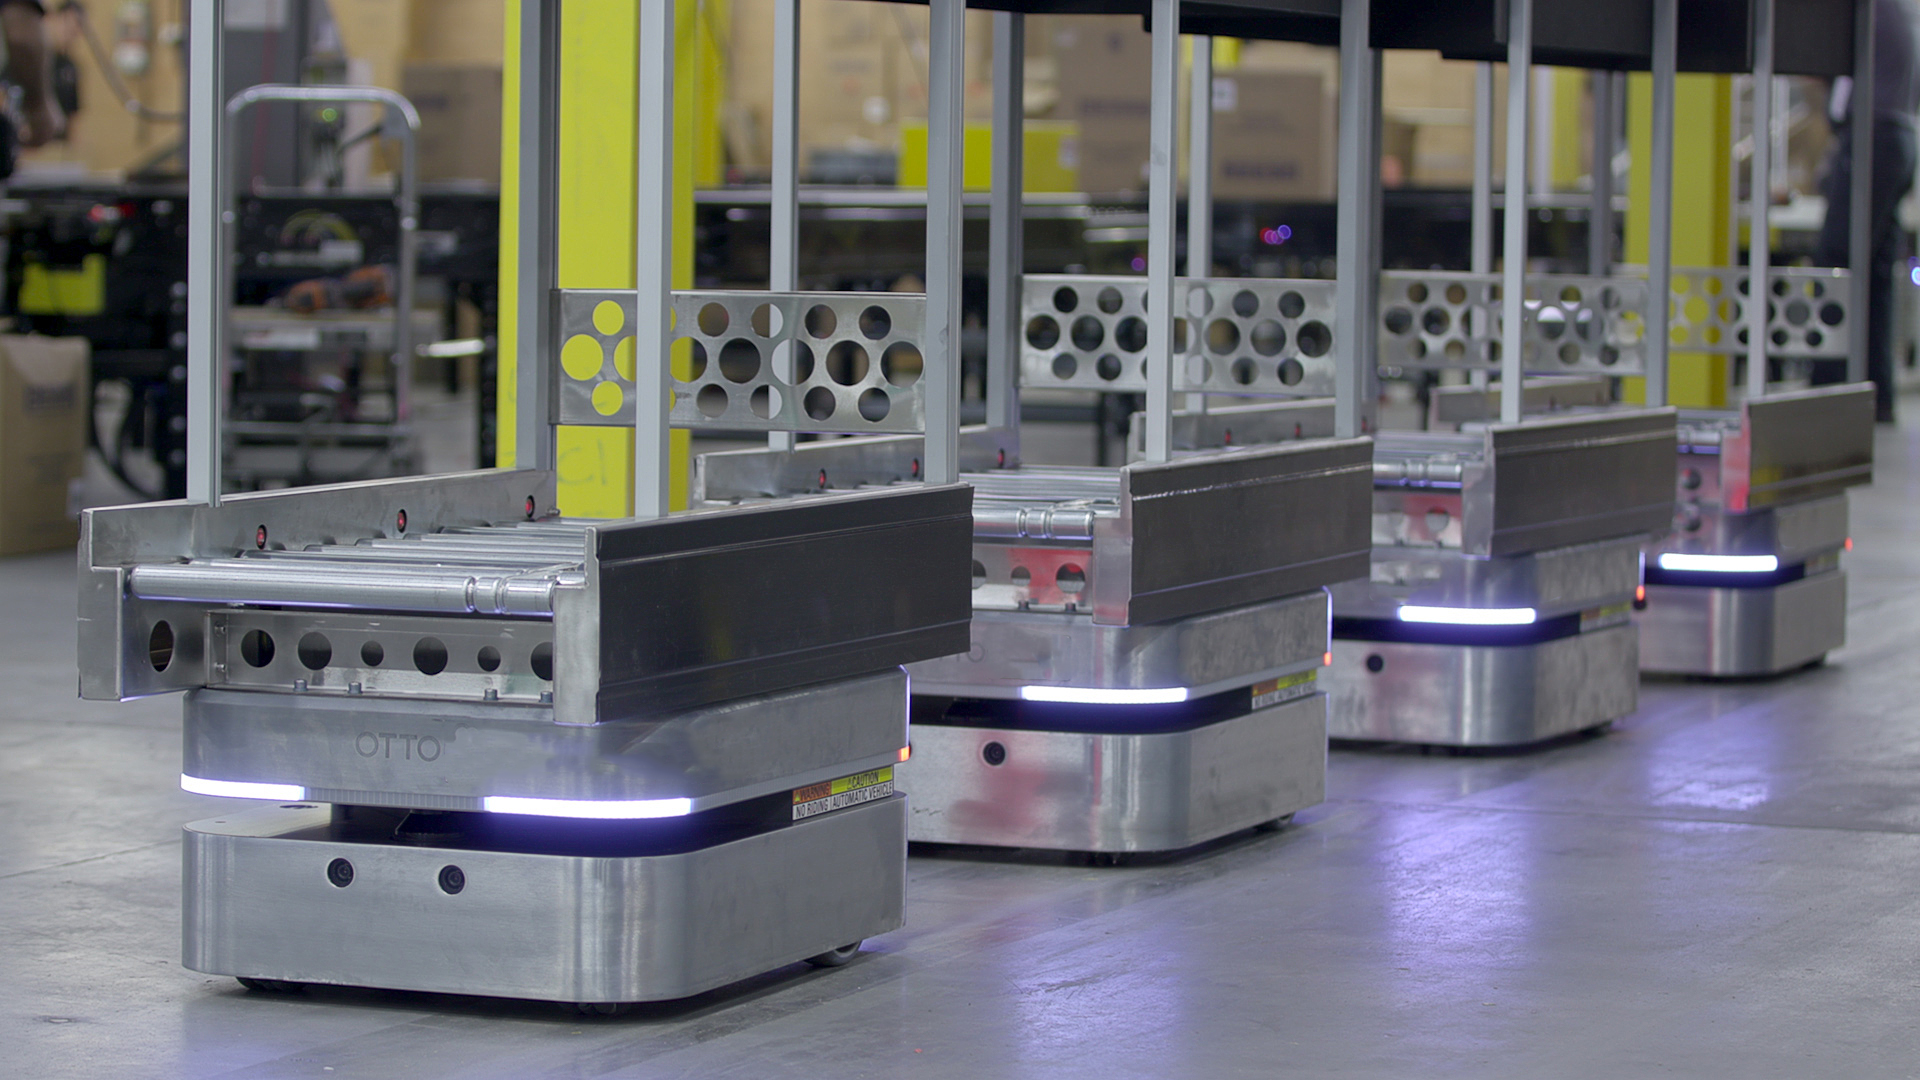 A fleet of Otto robots in a warehouse.